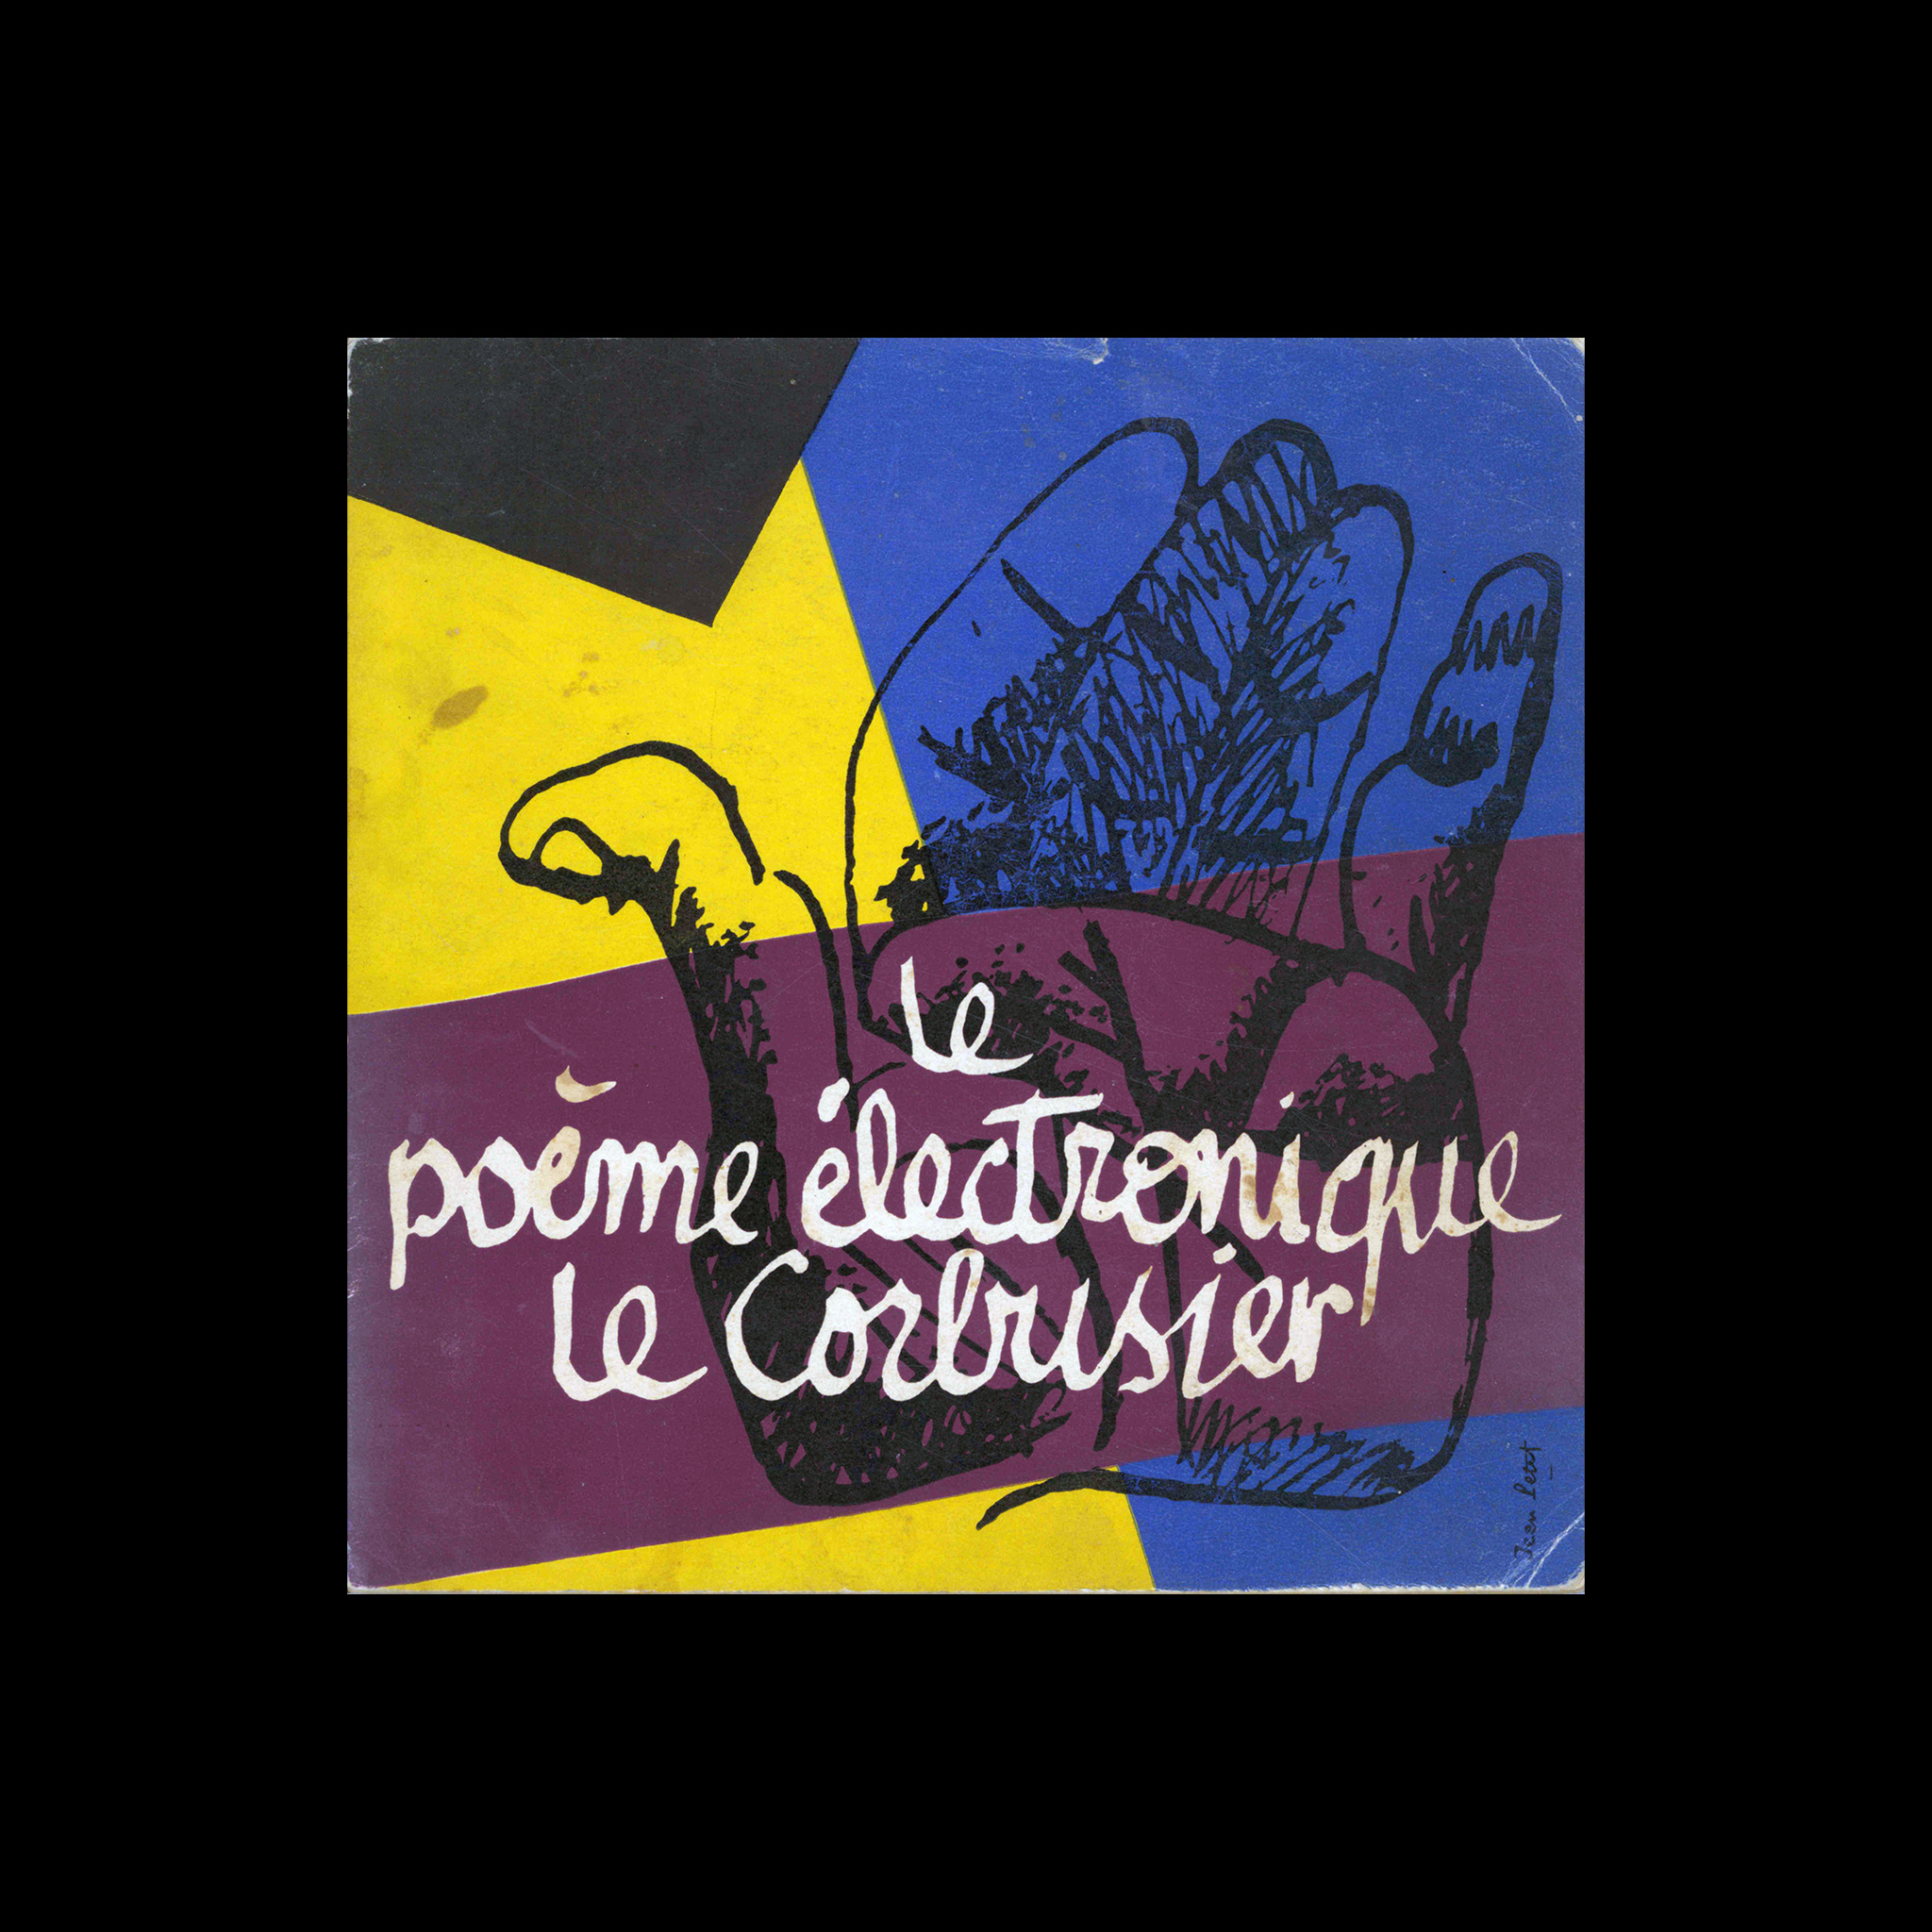 Le poème électronique Le Corbusier, 1958. Cover designed by Jean Petit